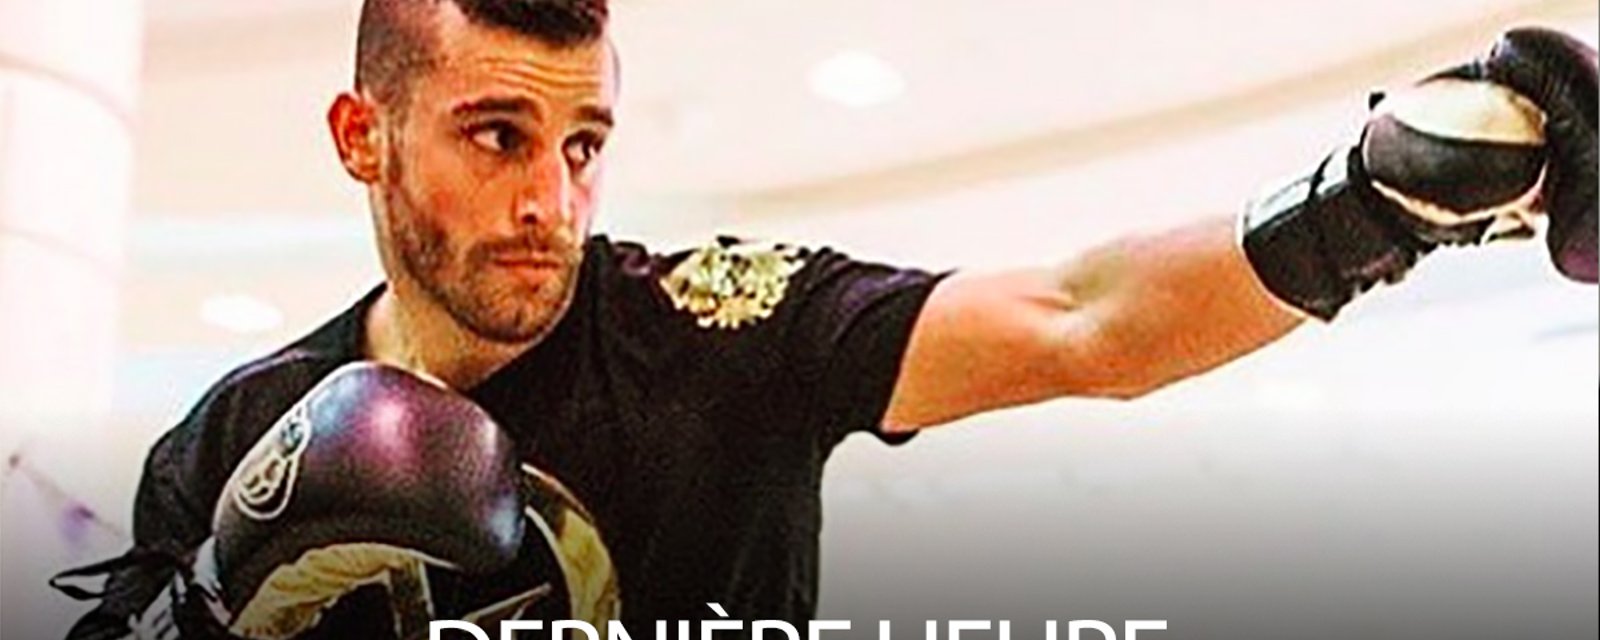 DERNIÈRE HEURE: Le boxeur québécois David Lemieux opéré d'urgence, son combat de samedi est annulé